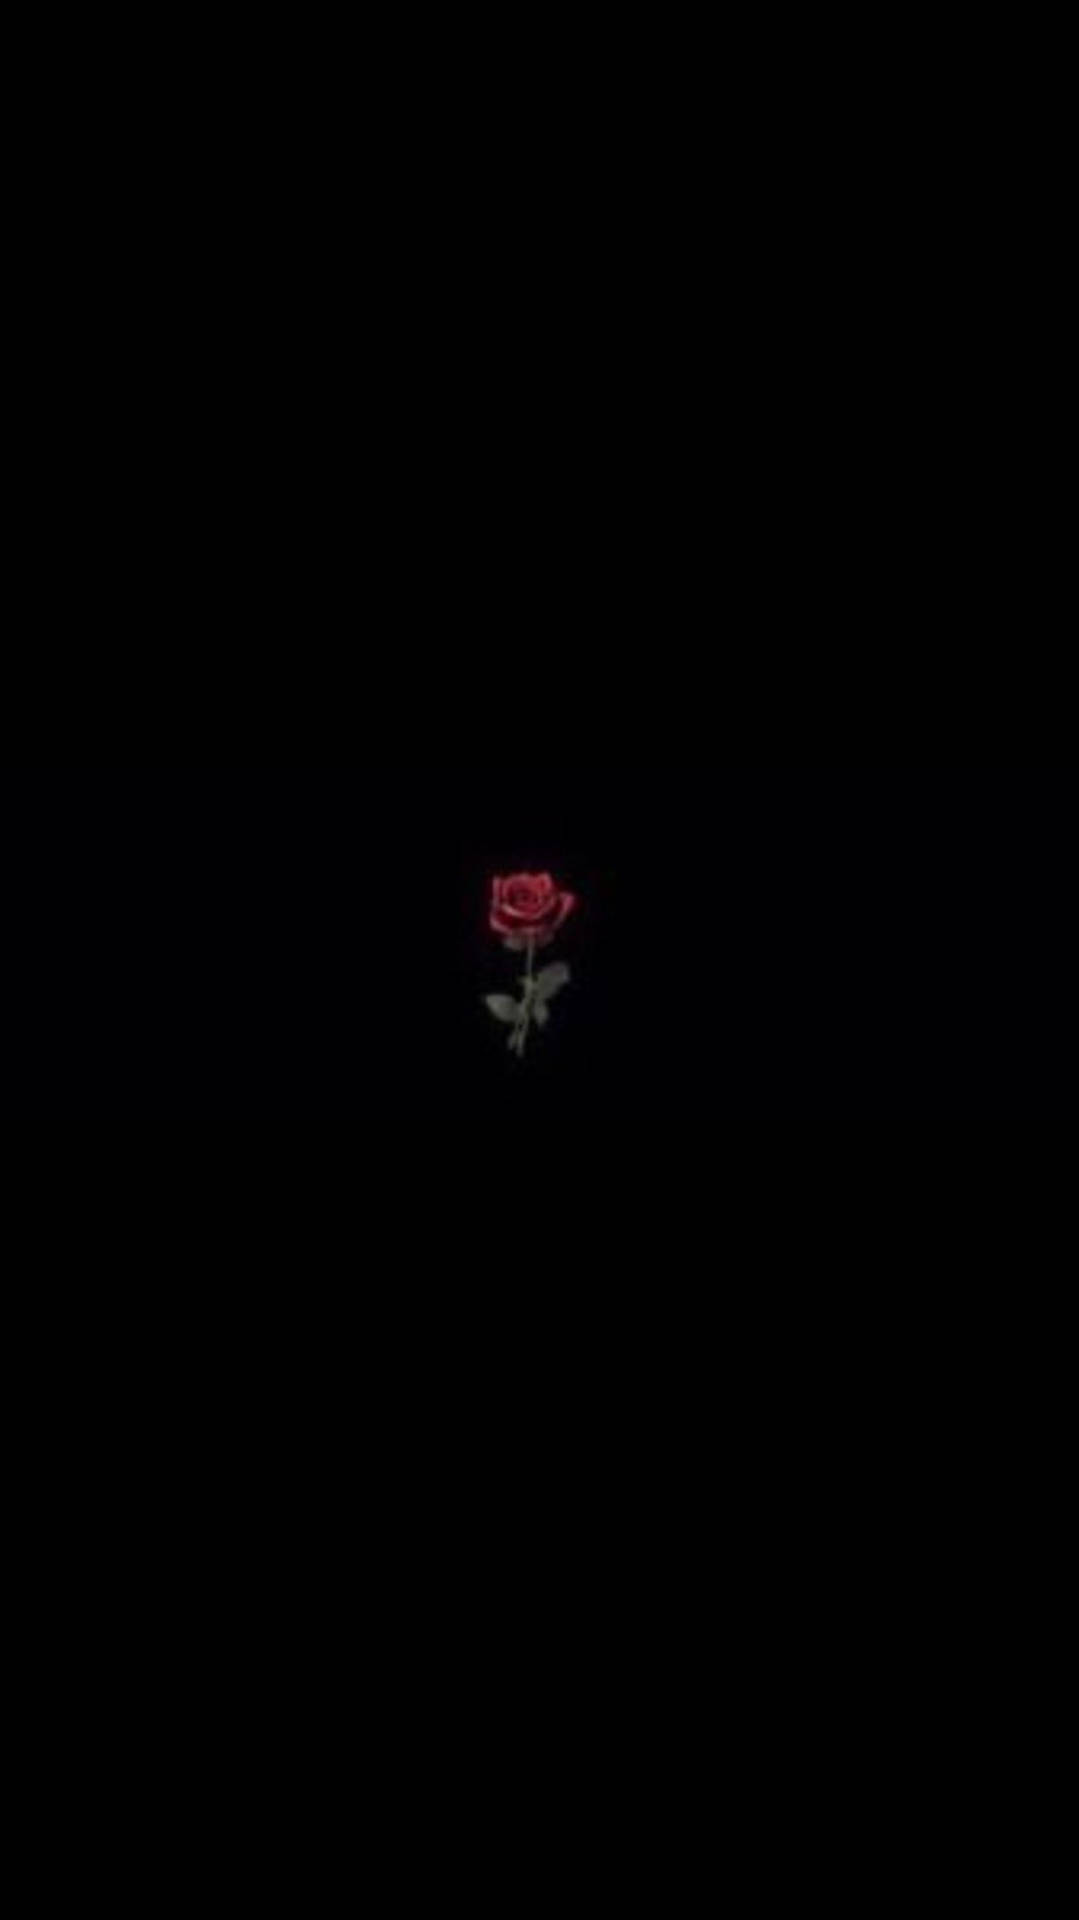 A rose in the dark - Black rose